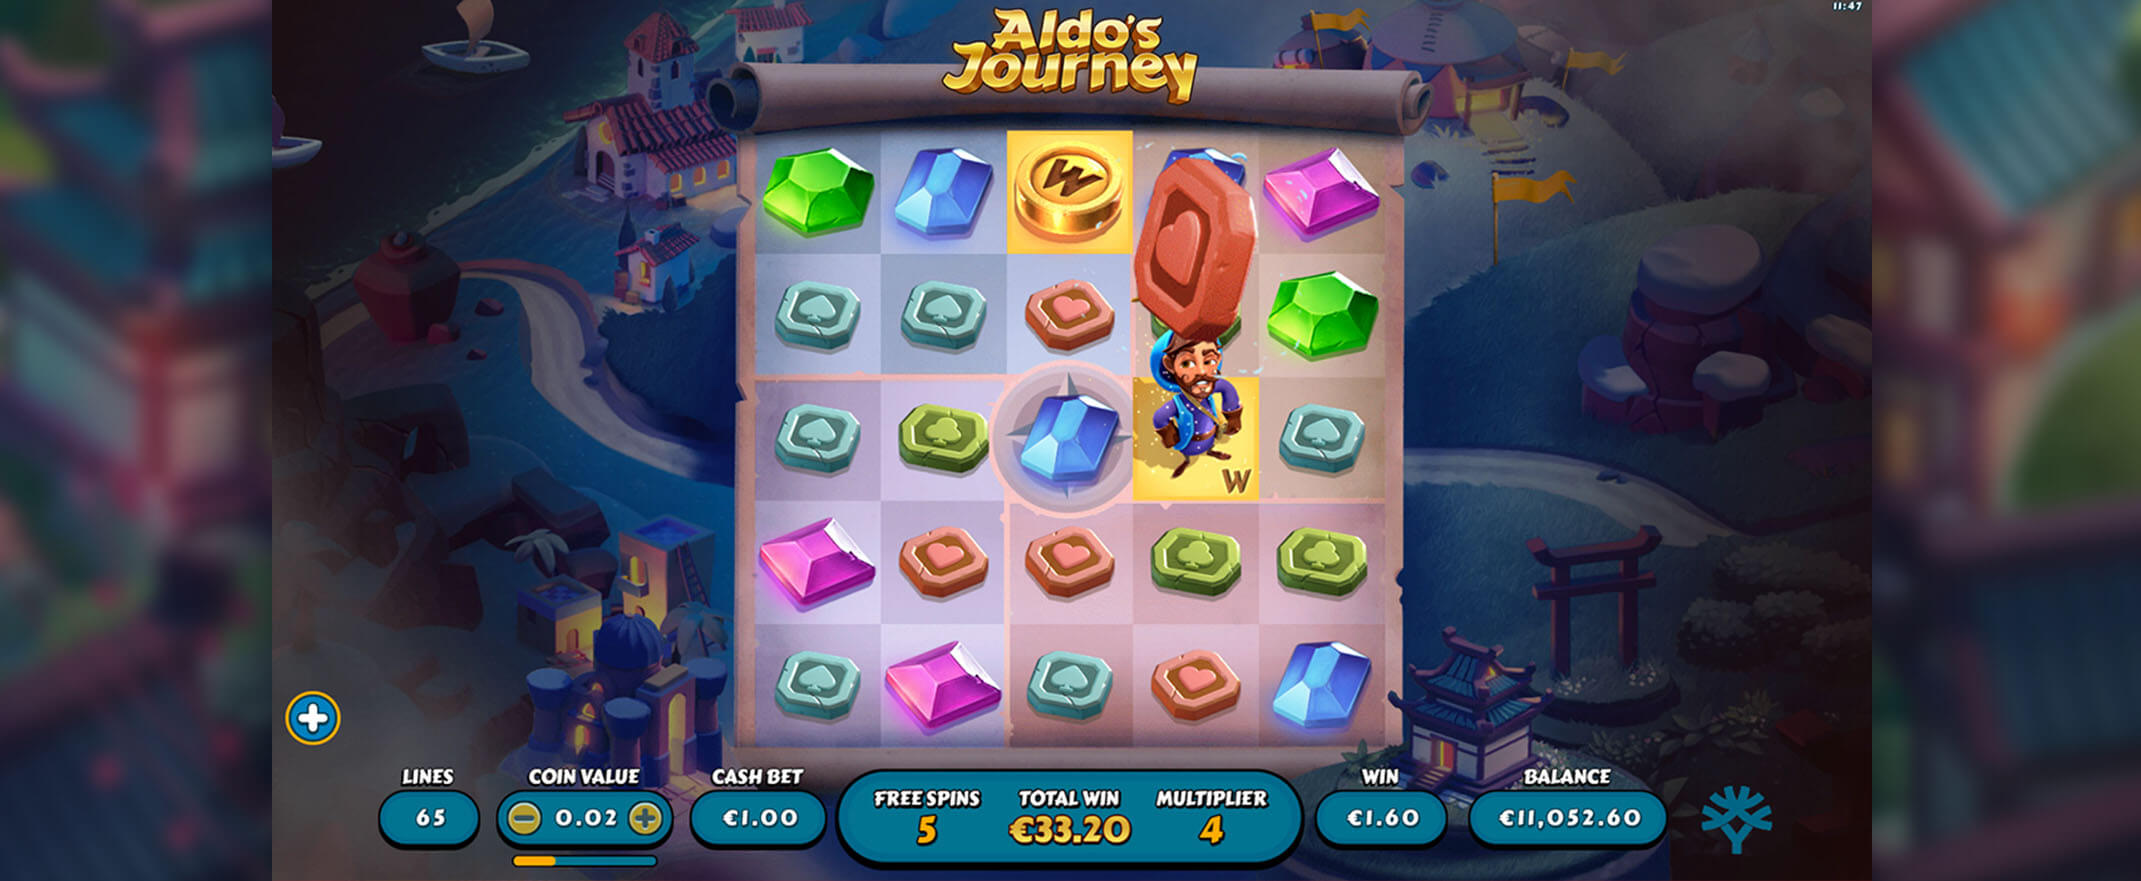 Aldos Journey Spielautomat spielen